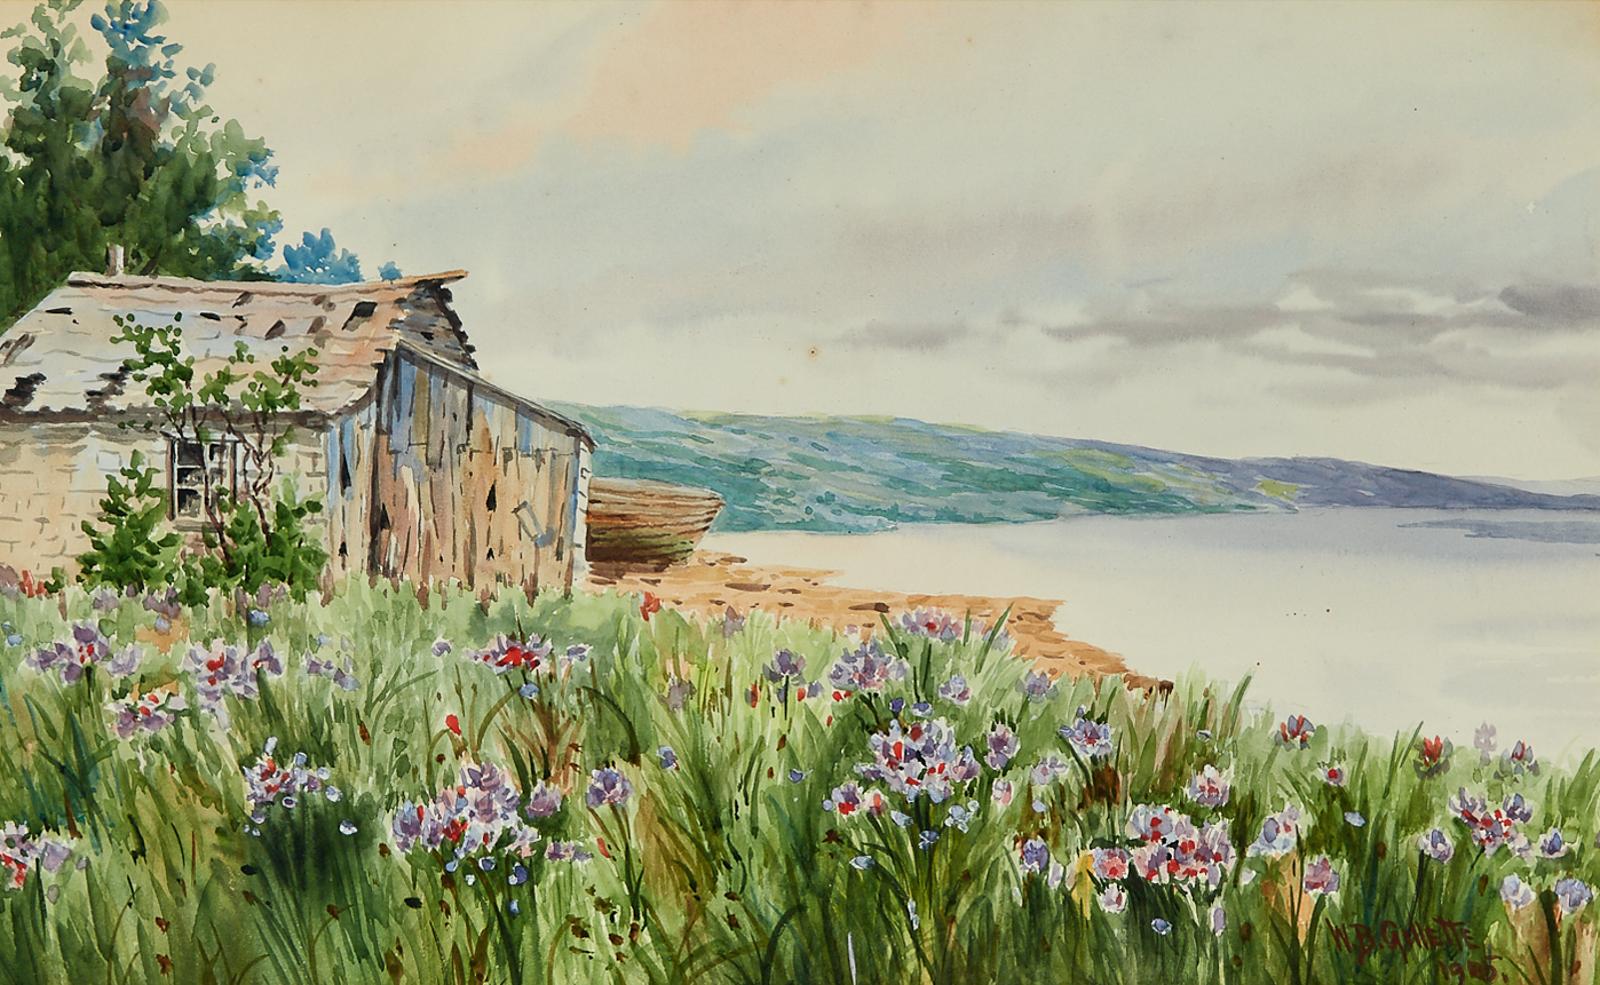 William B. Gillette (1864-1937) - Riverside Fishing Hut With Wetland Flowers In Bloom, N.Y., 1905